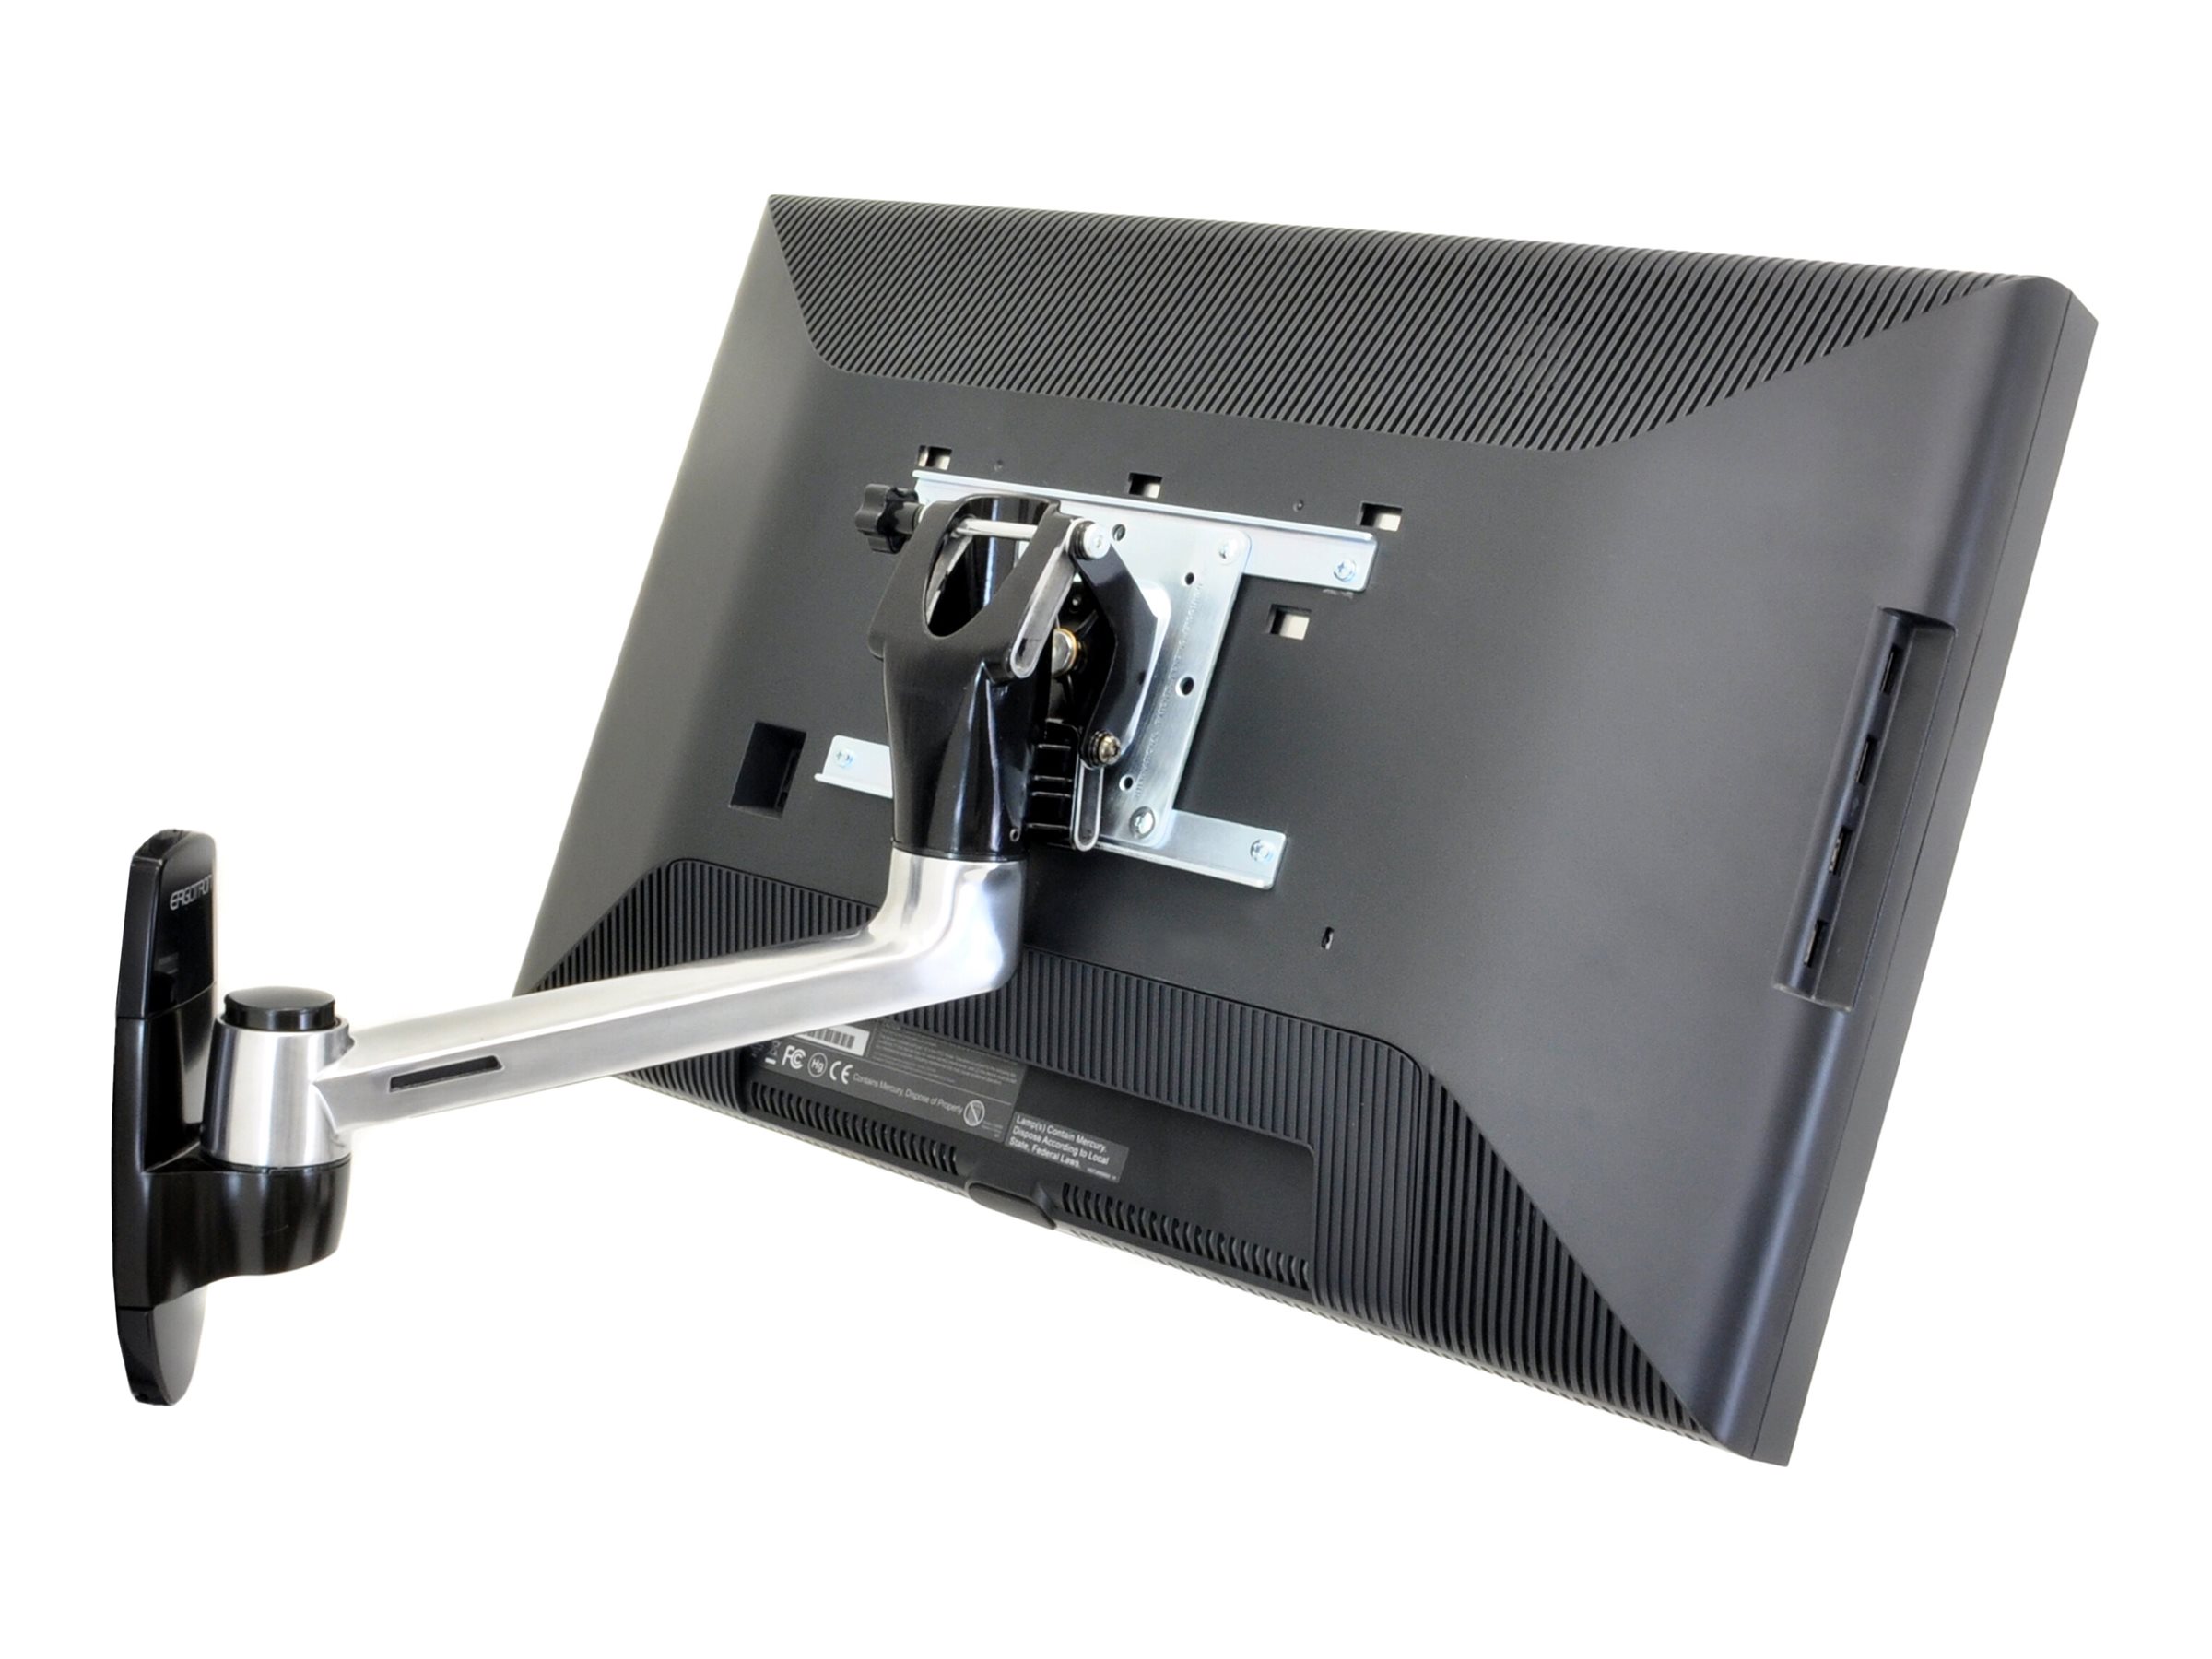 Ergotron LX HD Wall Mount Swing Arm - Kit de montage (bras pivotant) - pour TV - aluminium - Taille d'écran : up to 49" - montable sur mur - 45-268-026 - Montages pour TV et moniteur